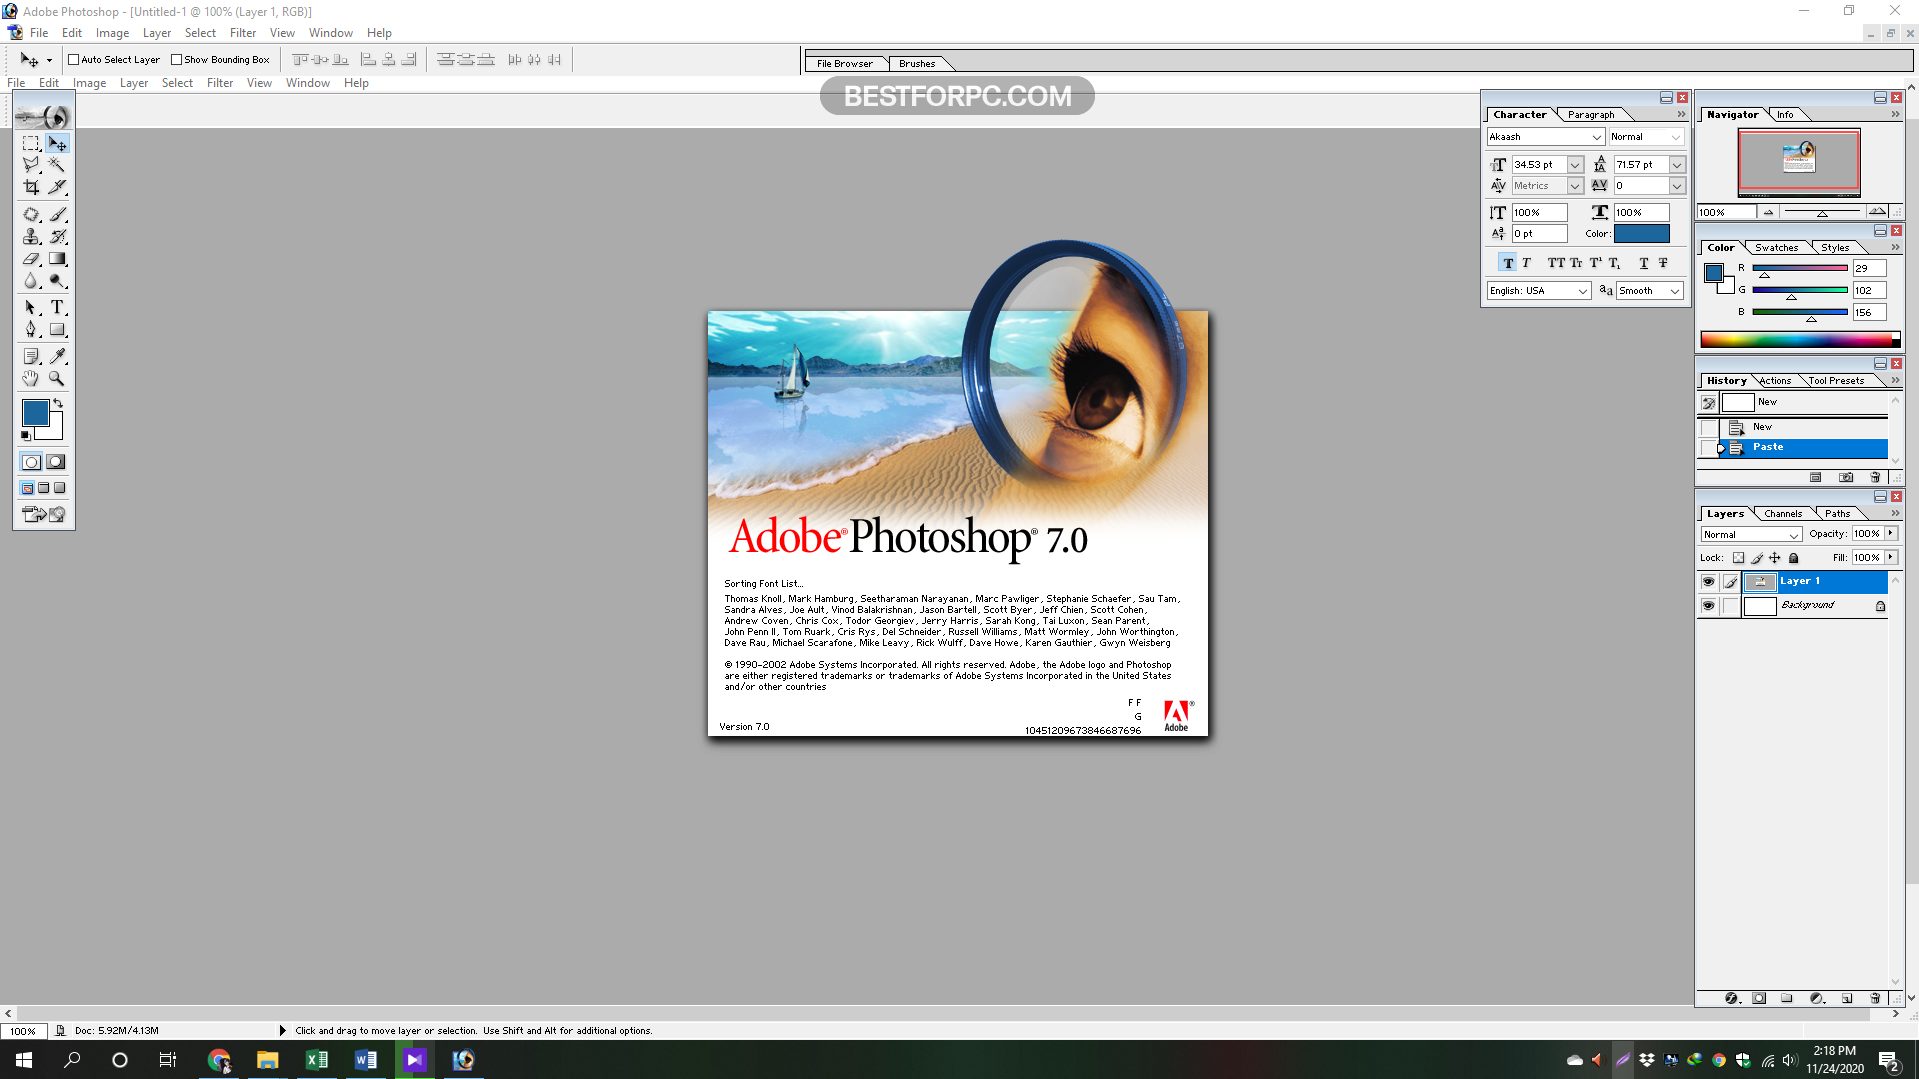 adobe photoshop version 7 windows download